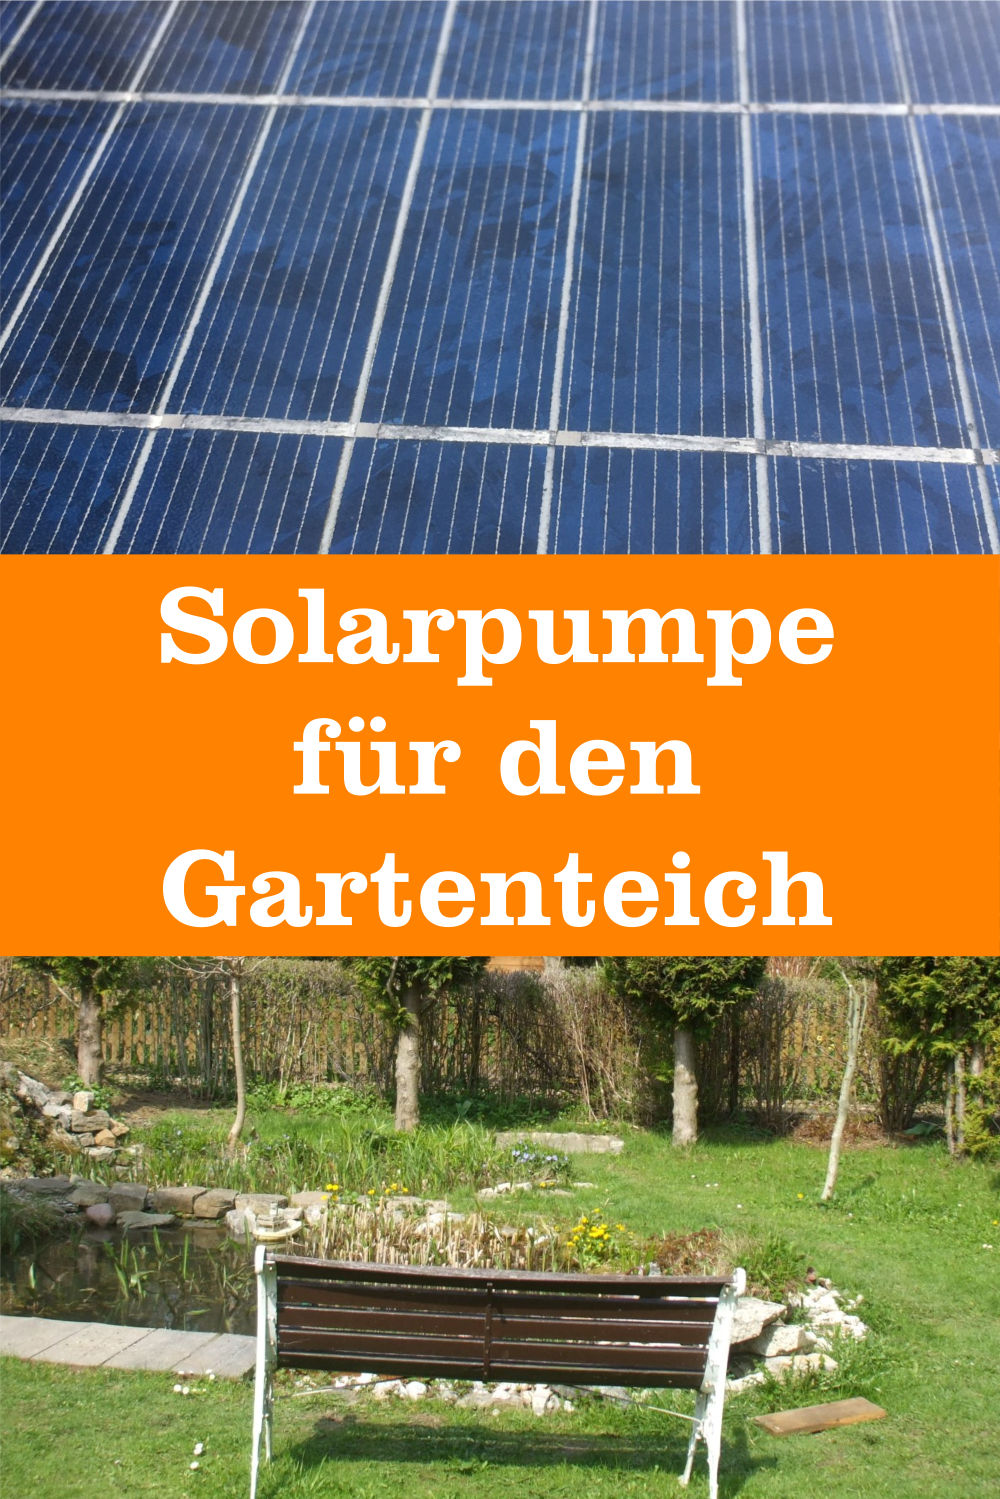 Solarpumpe Gartenteich